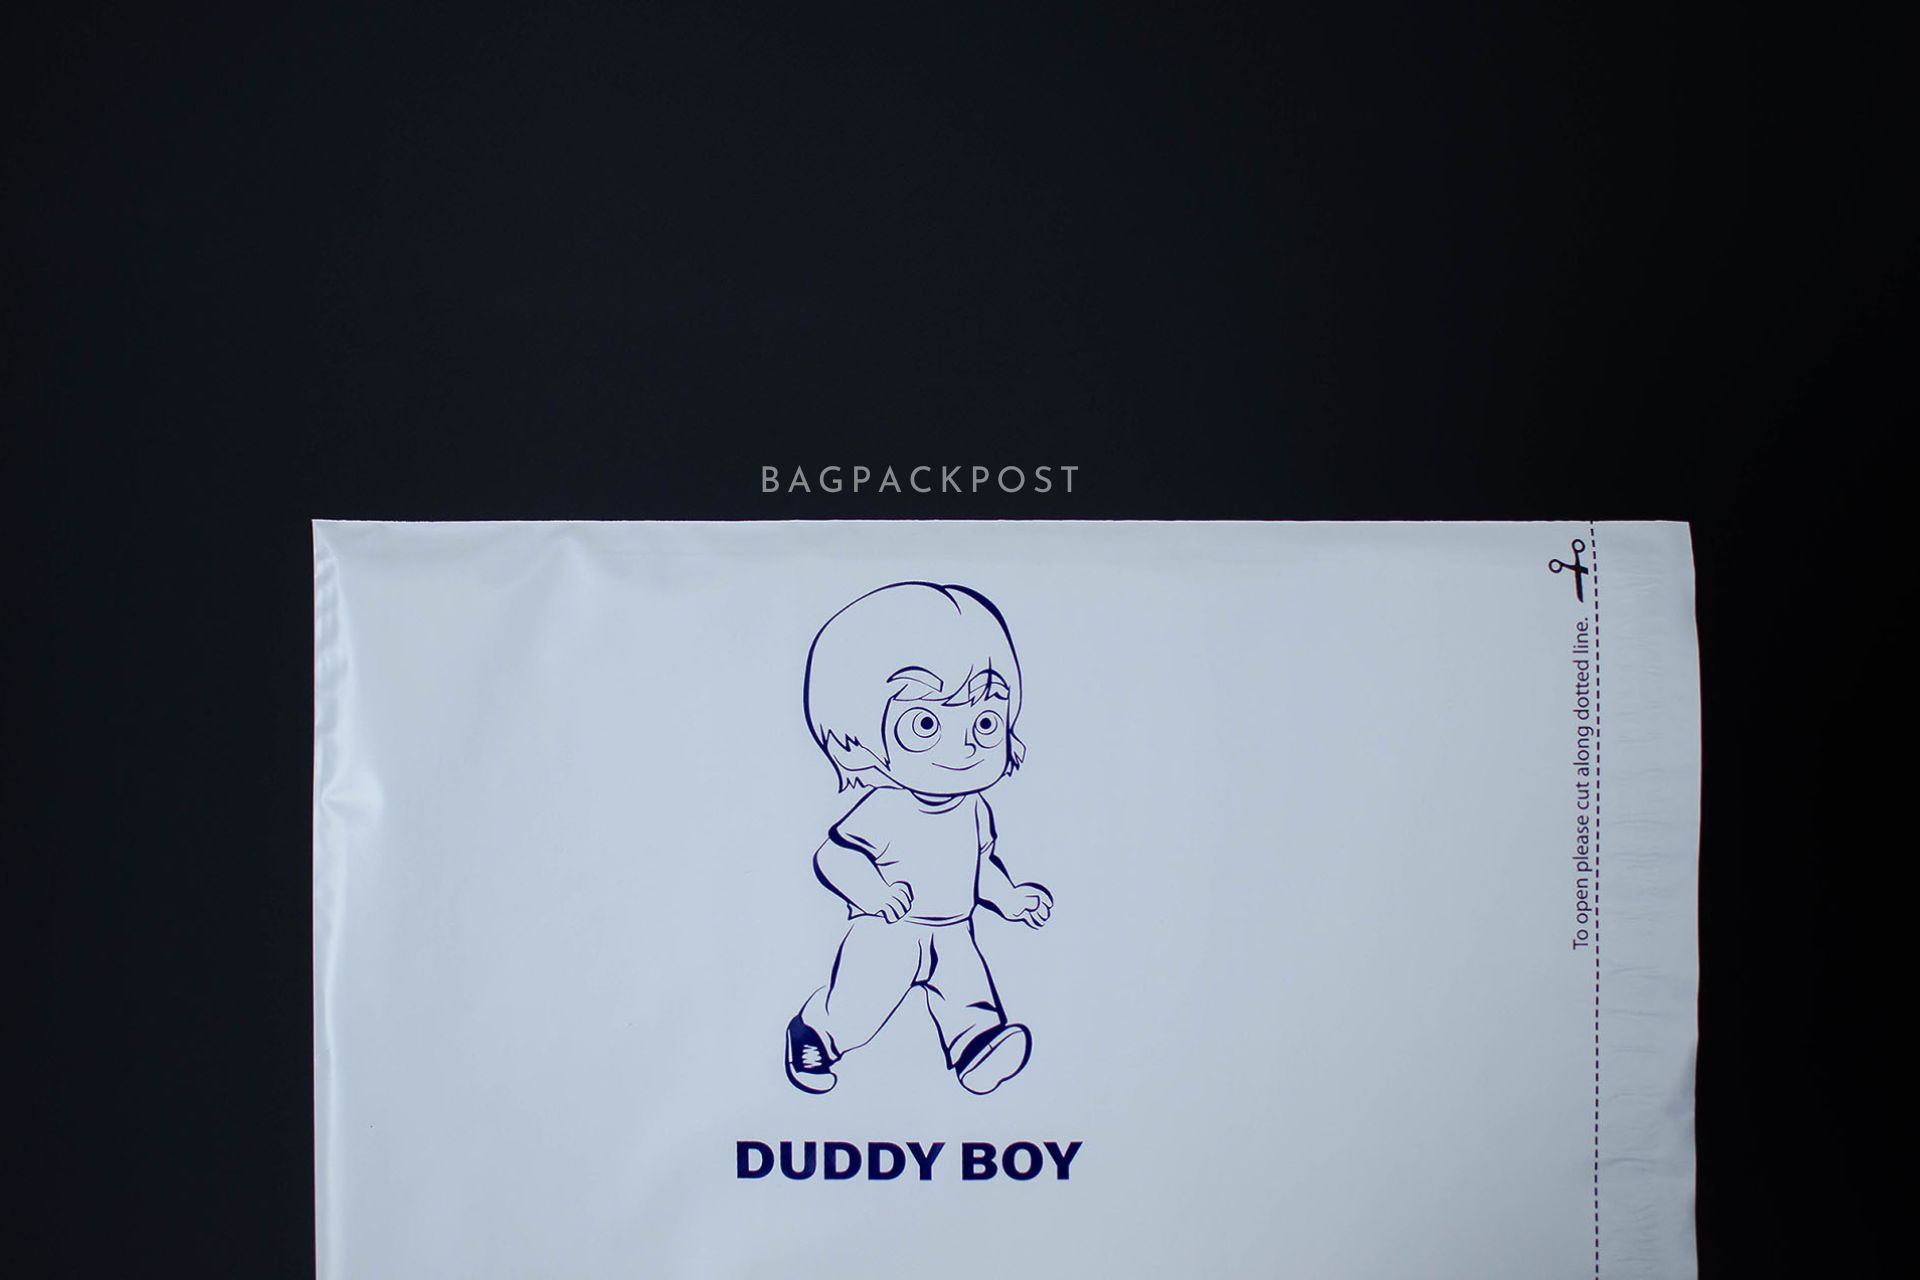 ผลิตถุงไปรษณีย์ ซองไปรษณีย์พิมพ์ลาย DUDDY BOY ซองไปรษณีย์สีขาว ถุงไปรษณีย์พิมพ์ลาย 2 BagPackPost